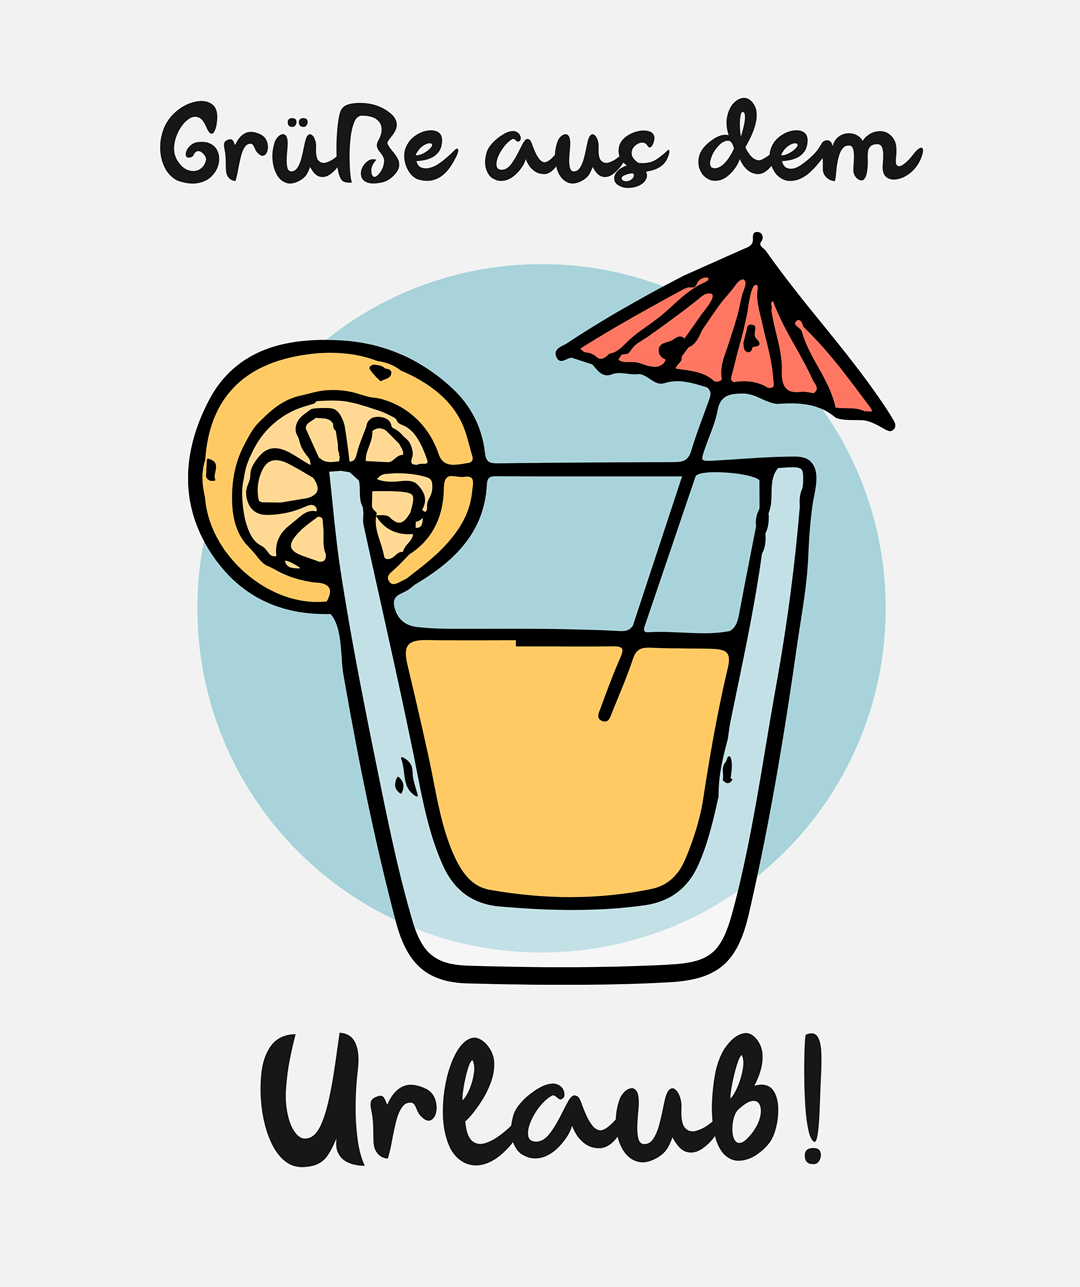 Ein Cocktail mit Zitronenscheibe und Schirmchen, darunter „Grüße aus dem Urlaub!“